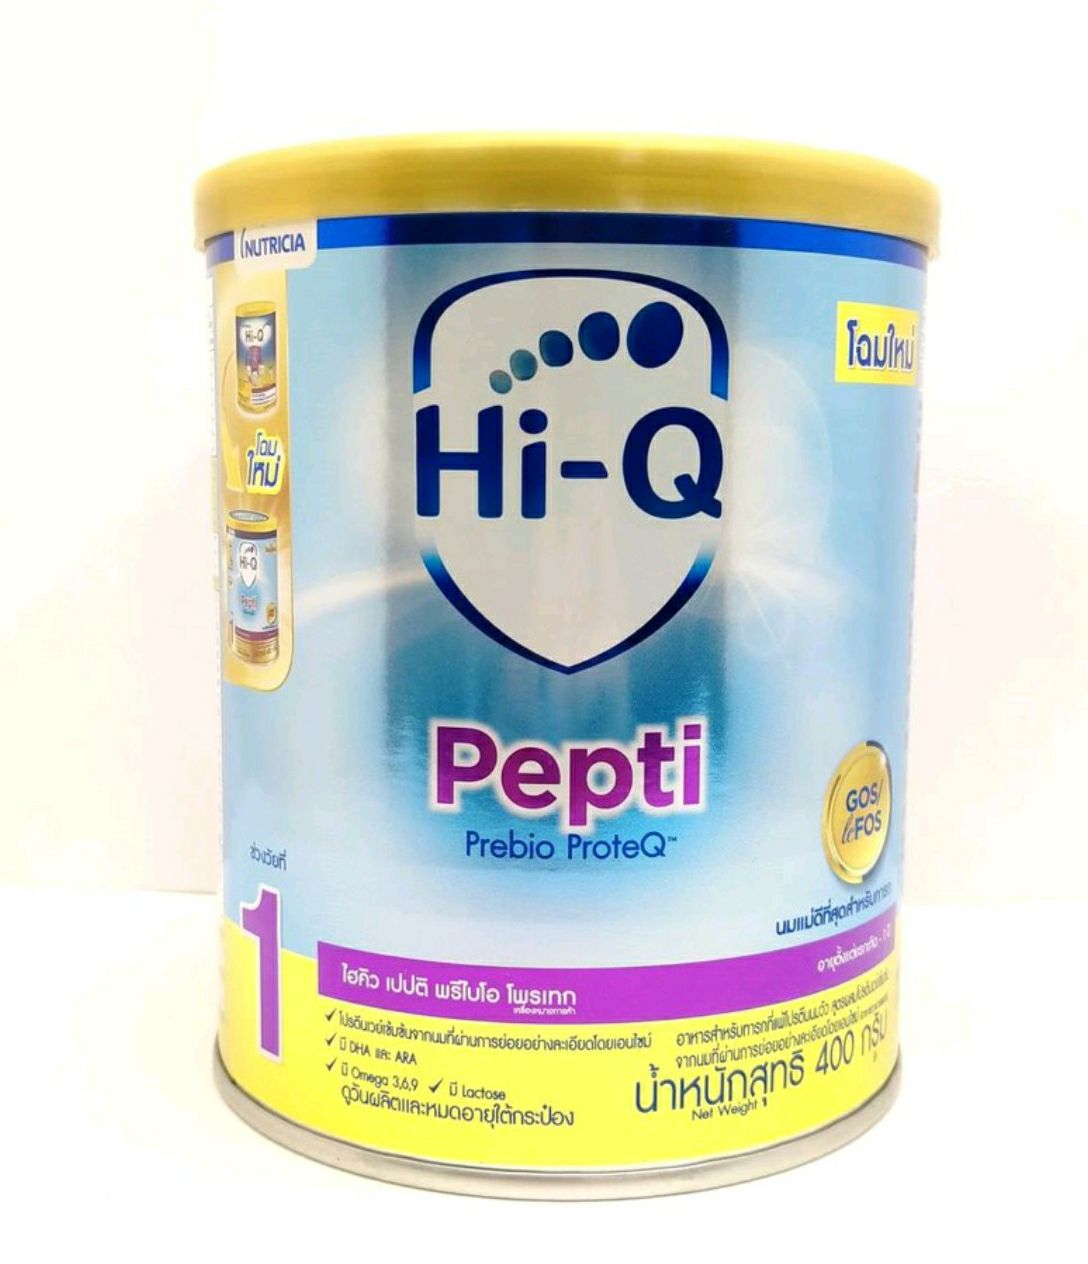 HI-Q Pepti ขนาด900กรัม ไฮคิวแปปติ ฟรีไบโอ โพรเทก900g สำหรับเด็กแพ้โปรตืนนมวัว อายุตั้งแต่แรกเกิด-1ปี